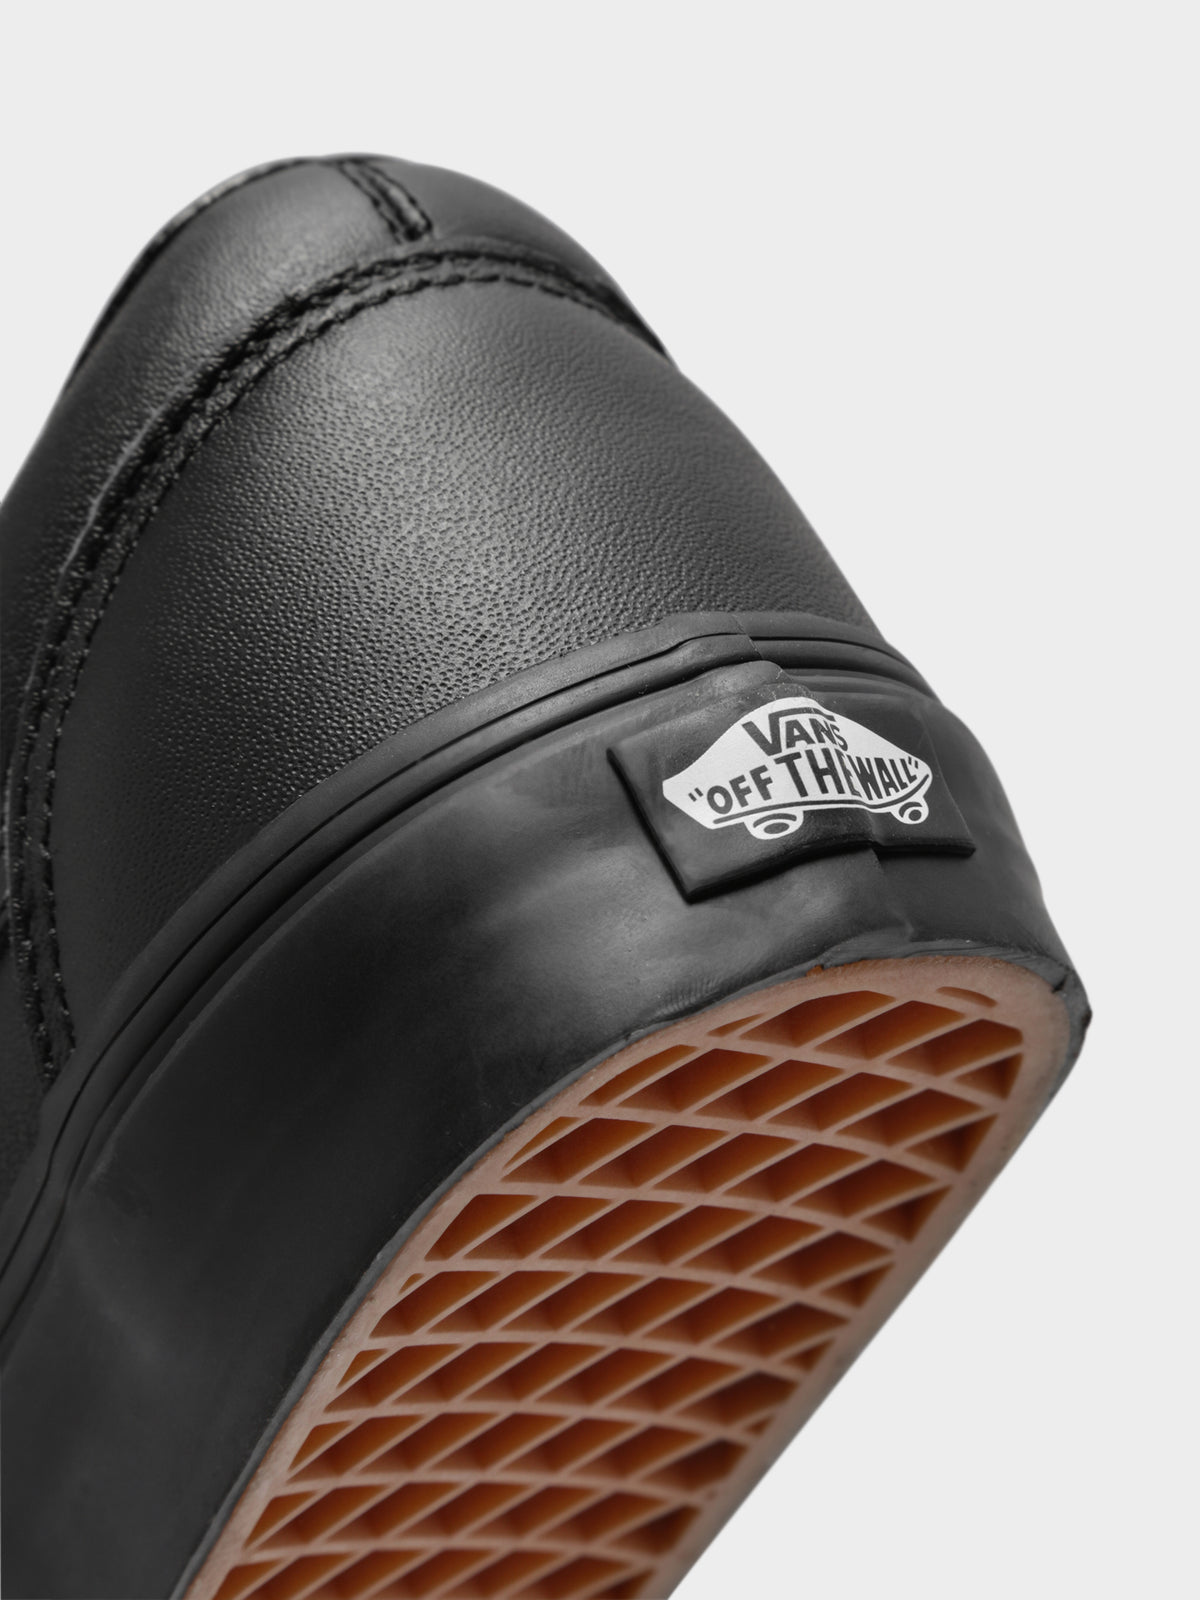 Unisex Old Skool Leather Sneakers in Triple Black